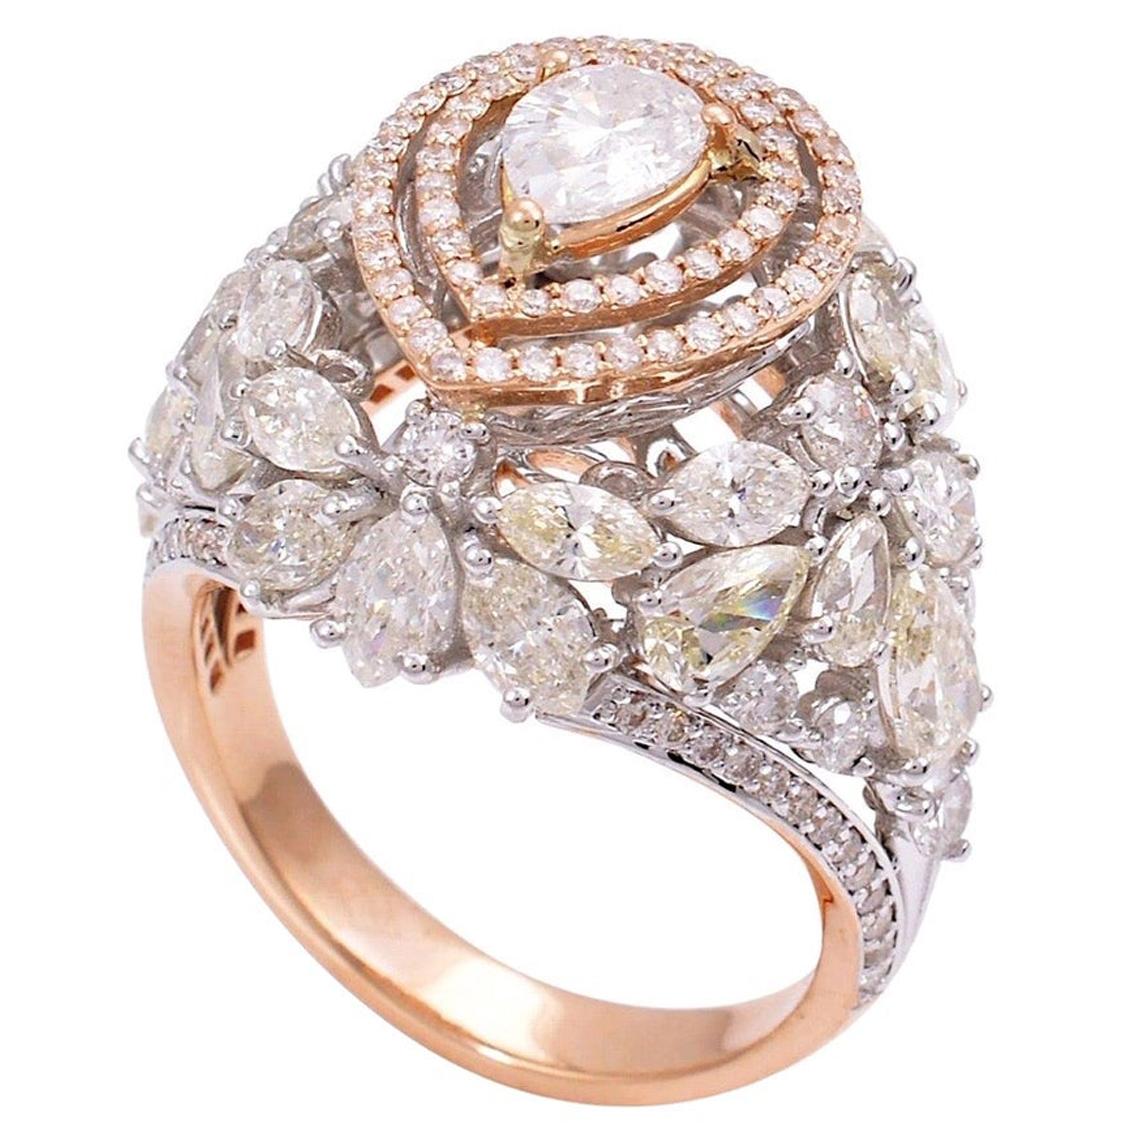 For Sale:  5.0 Carat Diamond 18 Karat Gold Ring